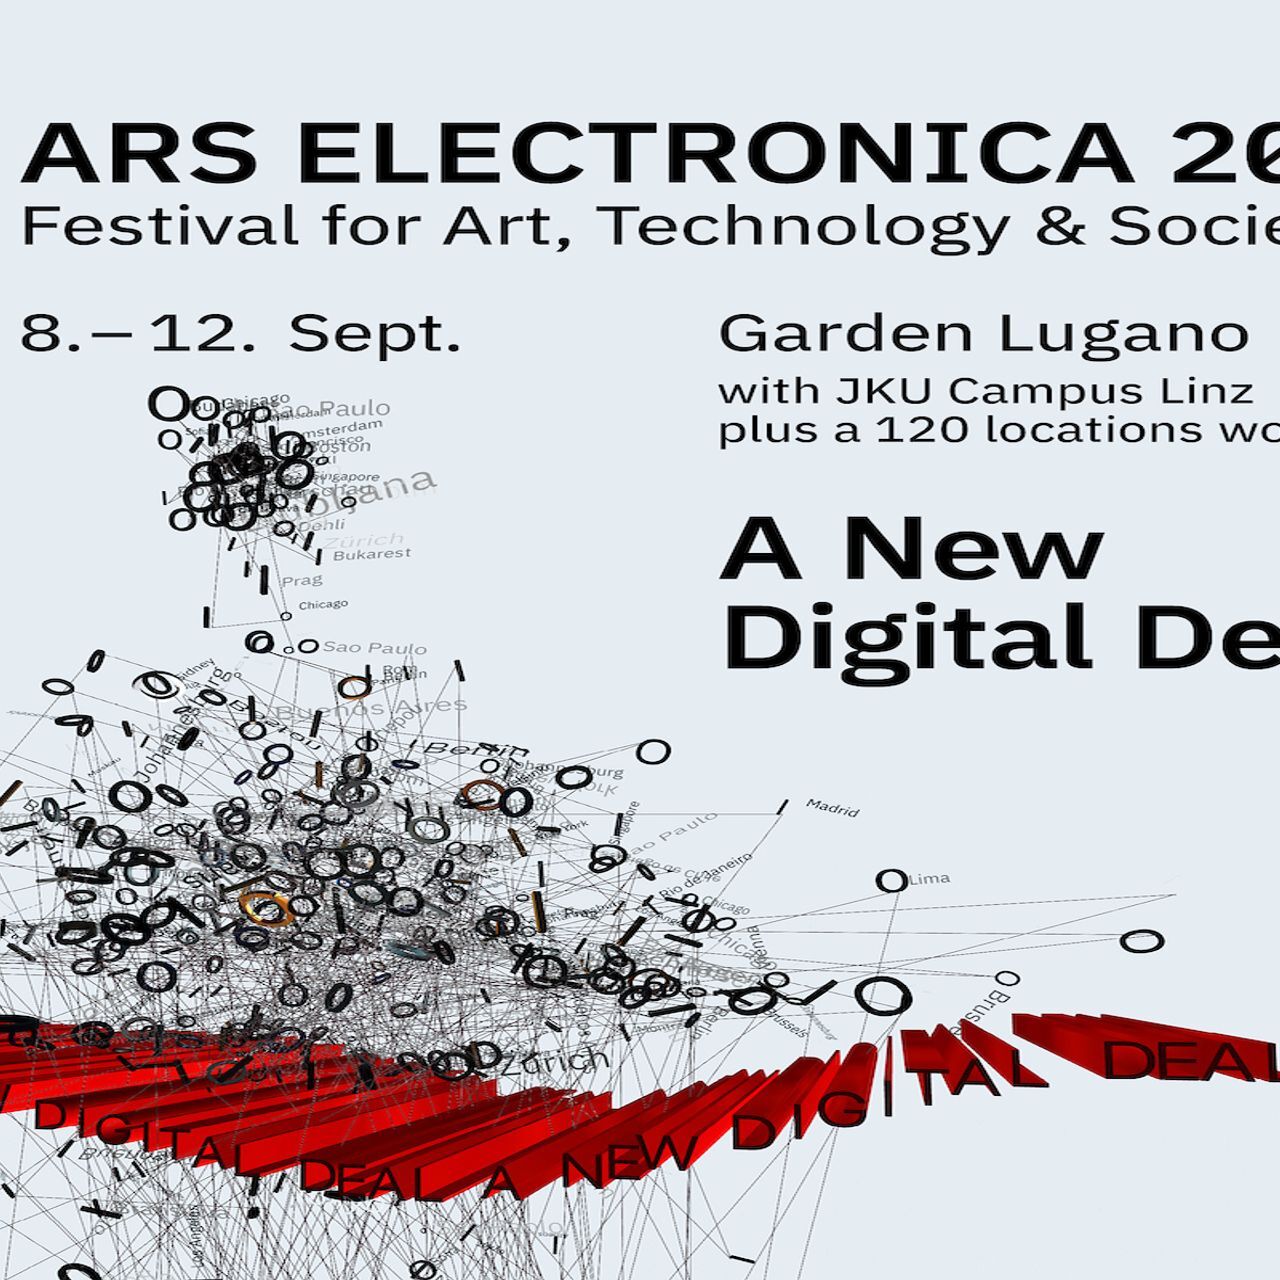 Plakaten for Ars Electronica-festivalen ved dens debut i Lugano den 9.-12. september 2021